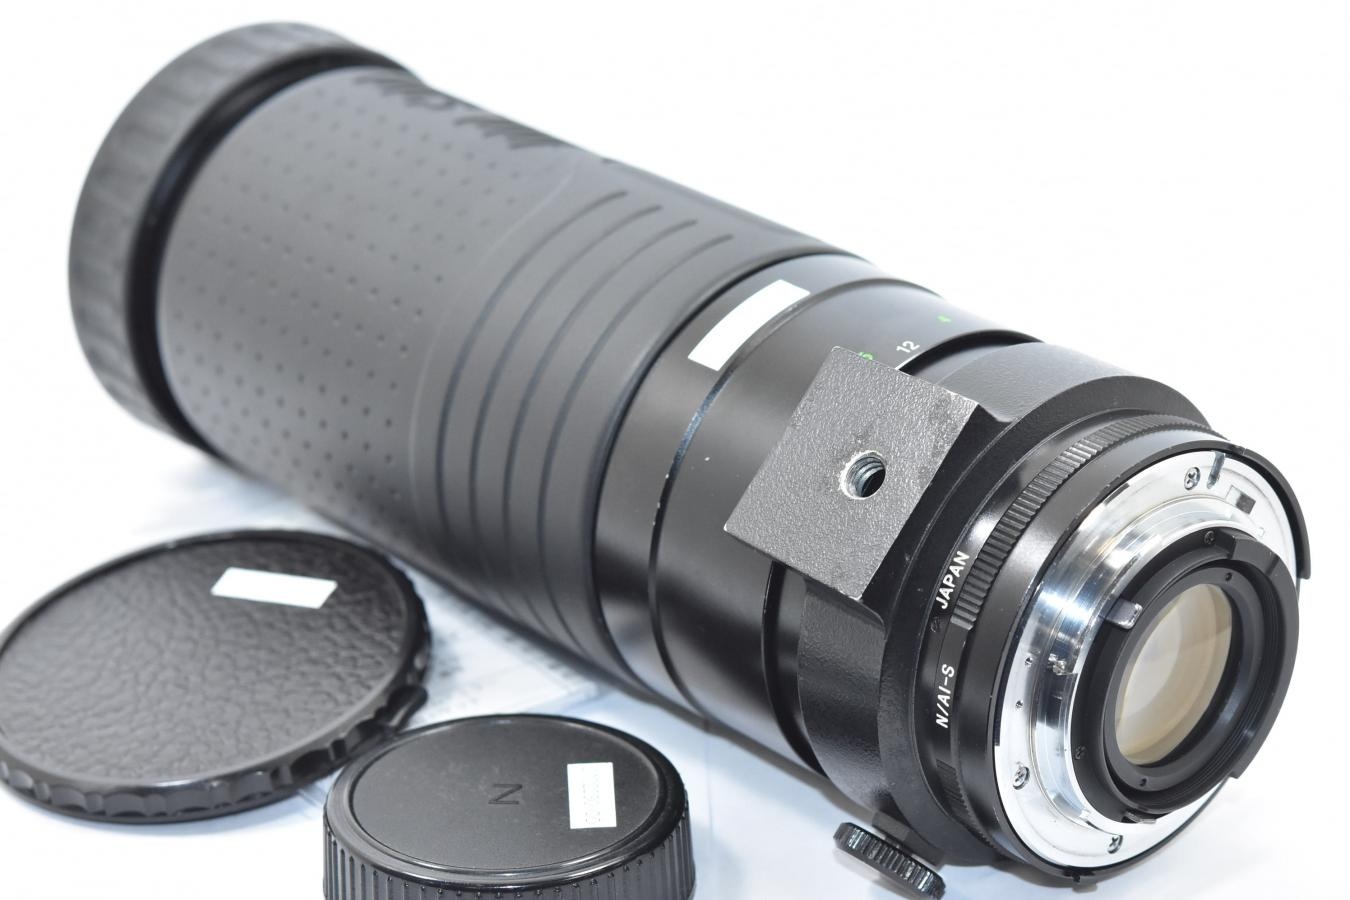 COSINA 100-500mm F5.6-8.0 MC MACRO 整備済 【Nikon Ai-Sマウントレンズ】